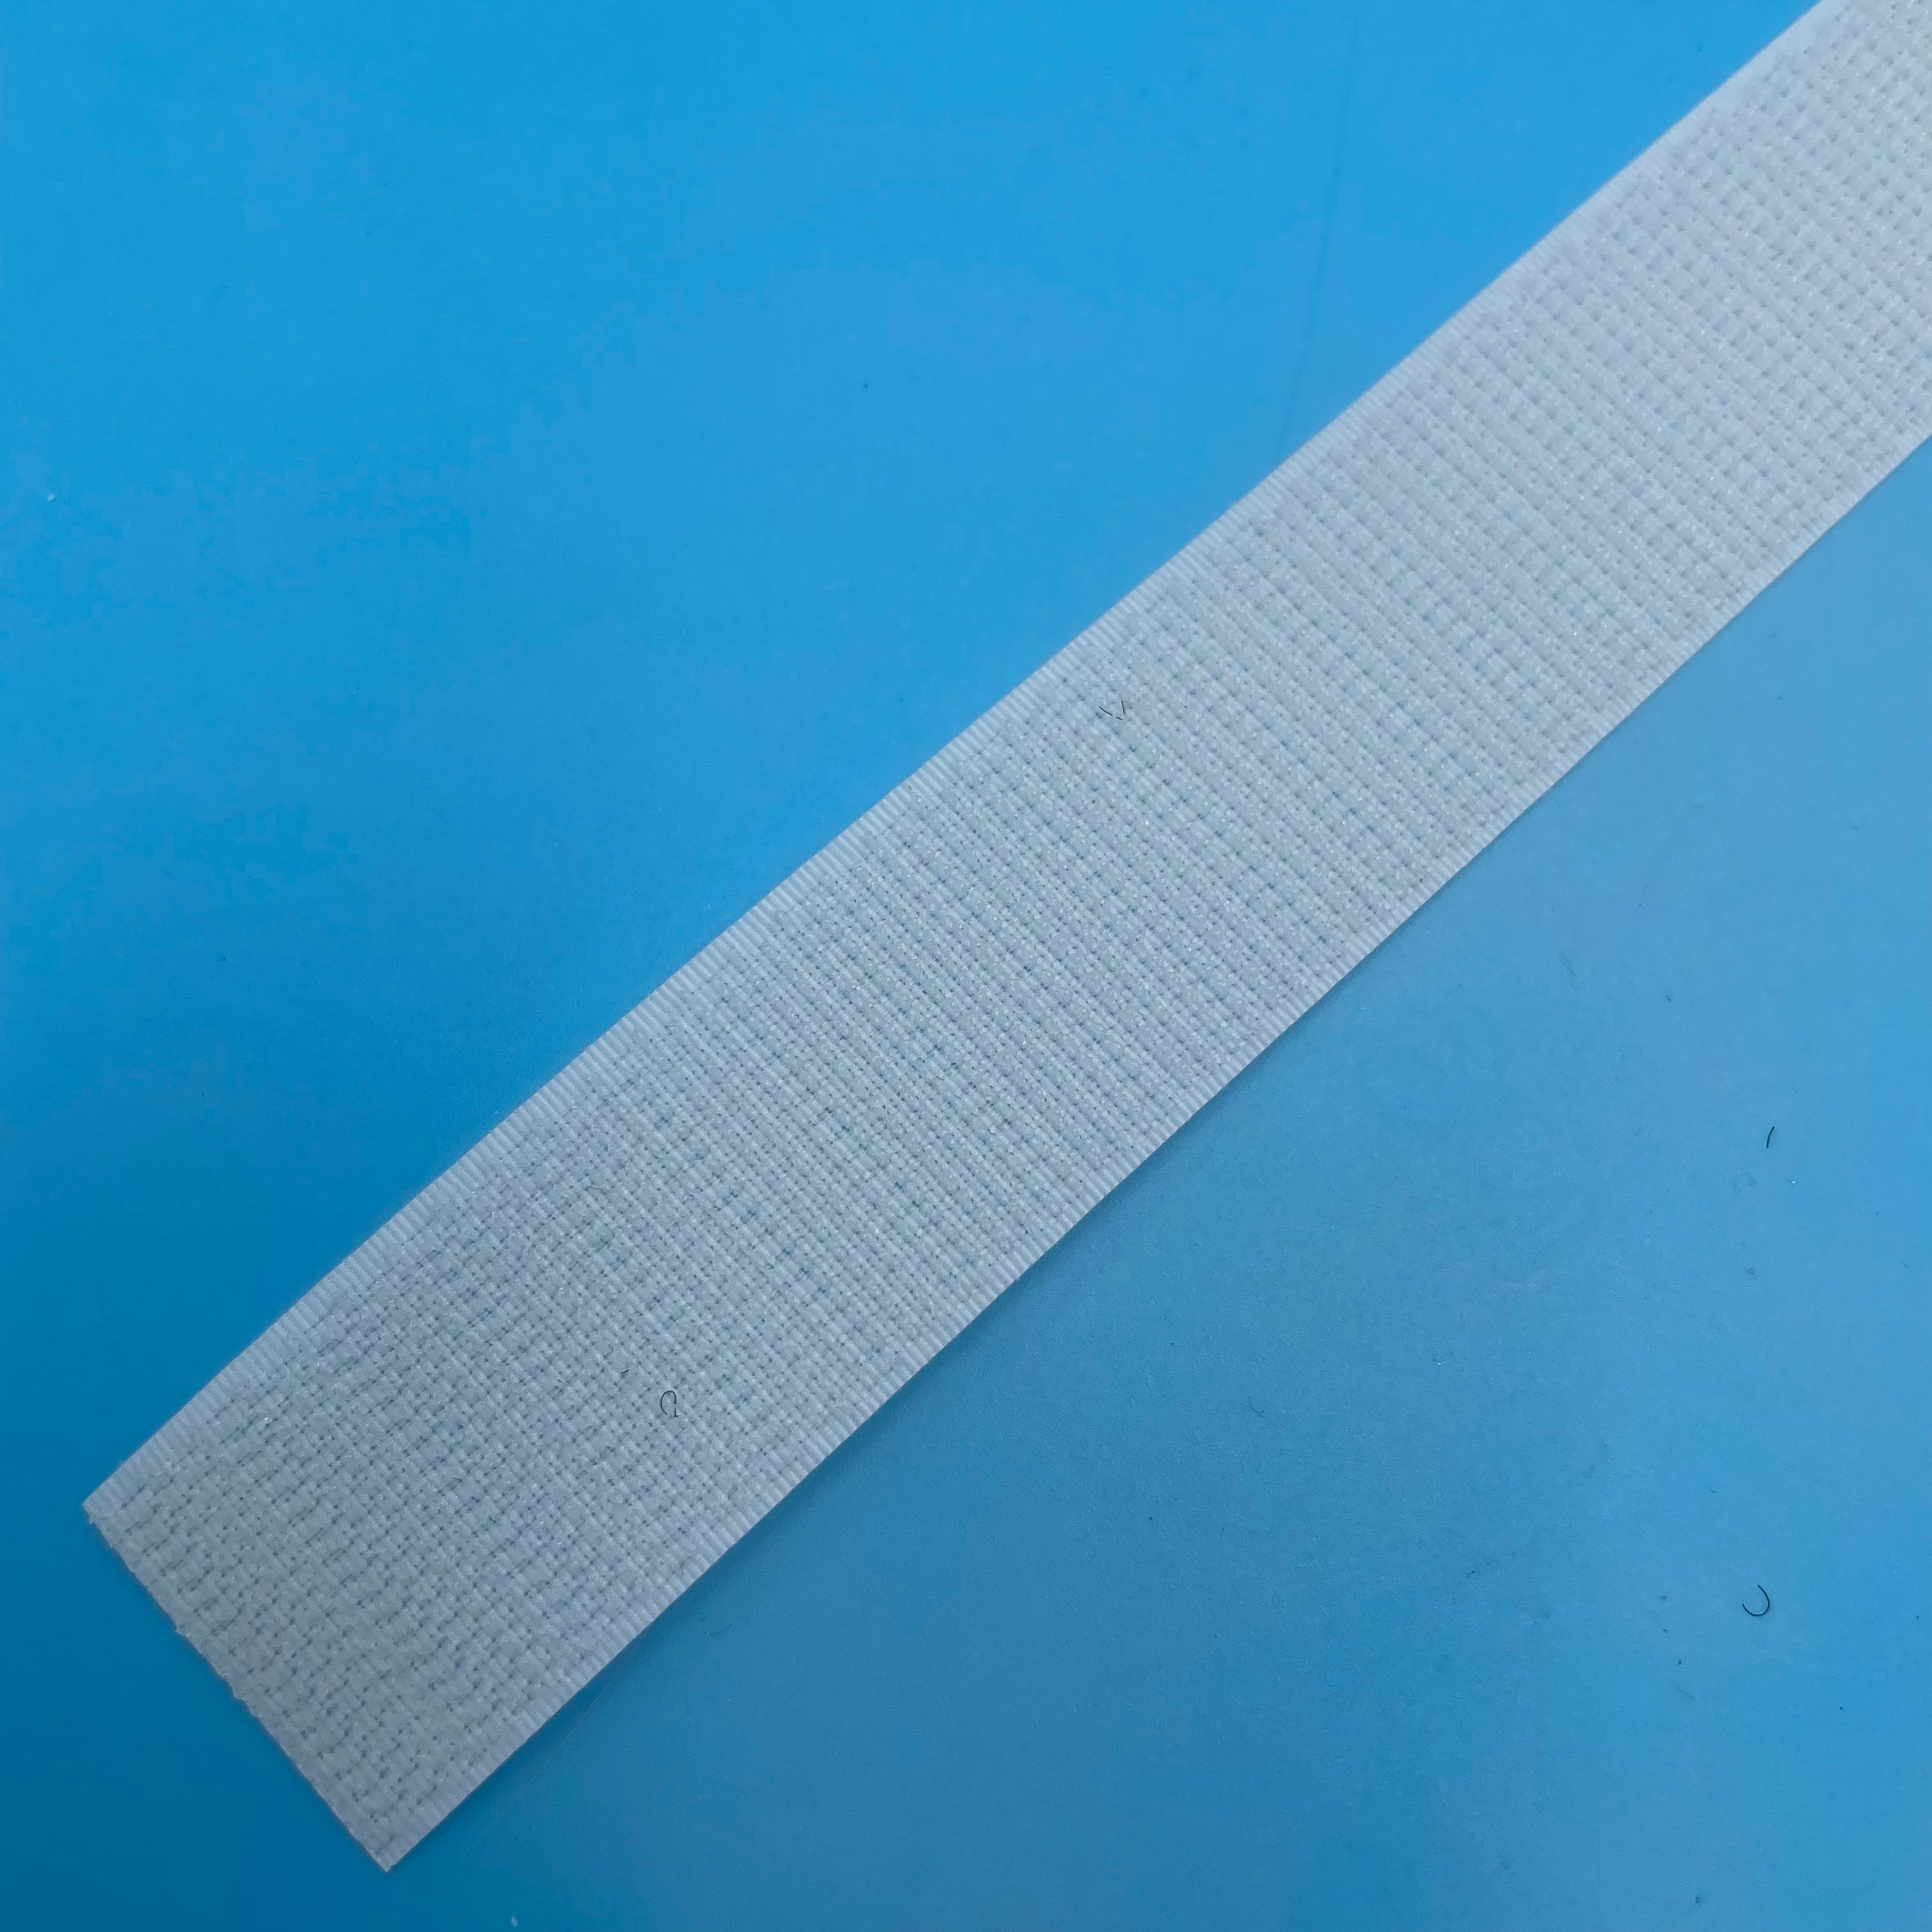 VELCRO® Brand Sew On Hook Tape Strips White